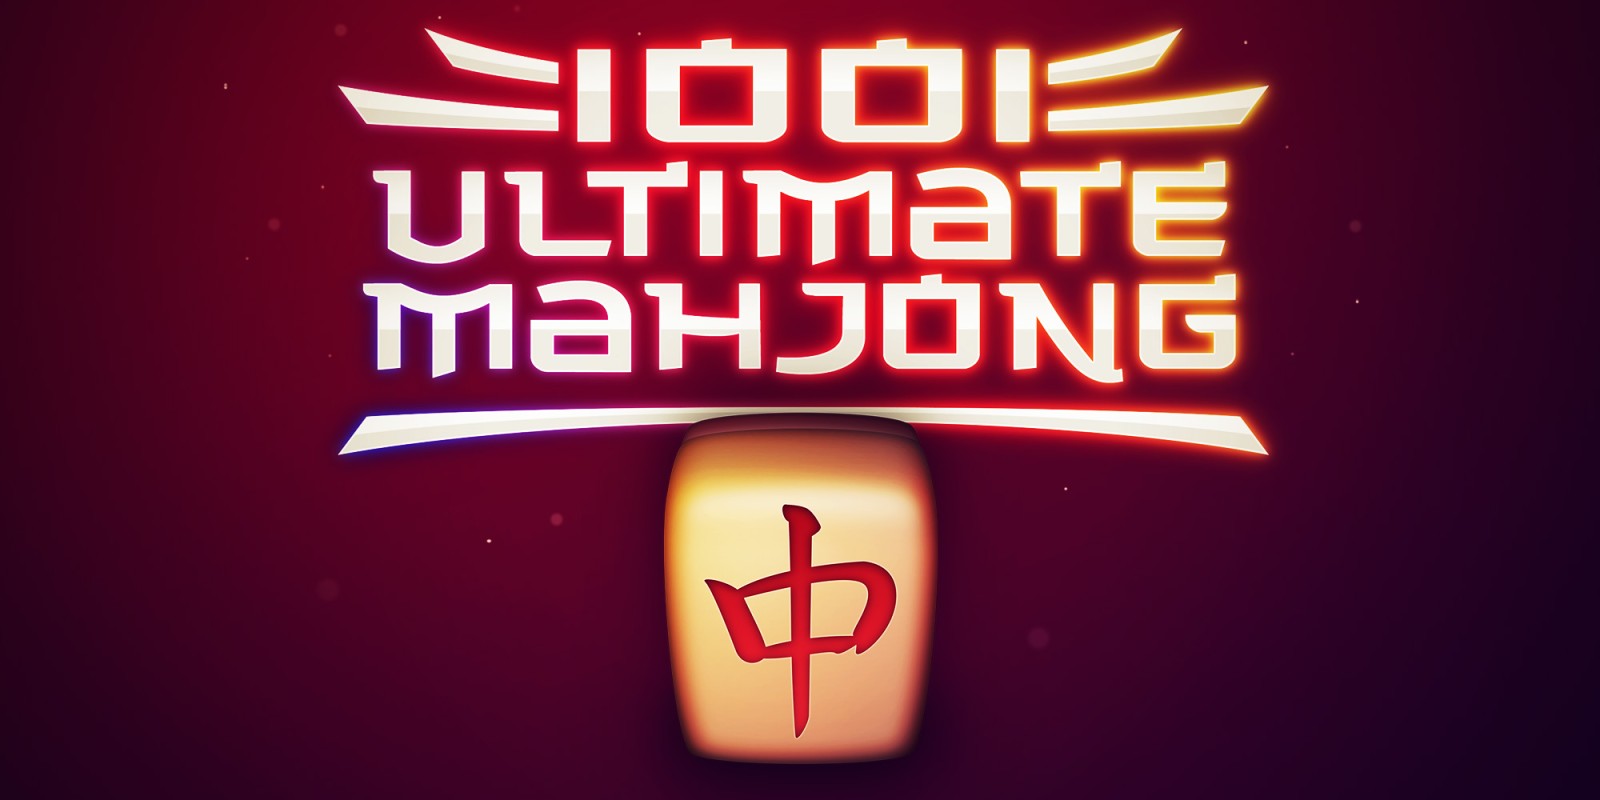 1001 Spiele Mahjong